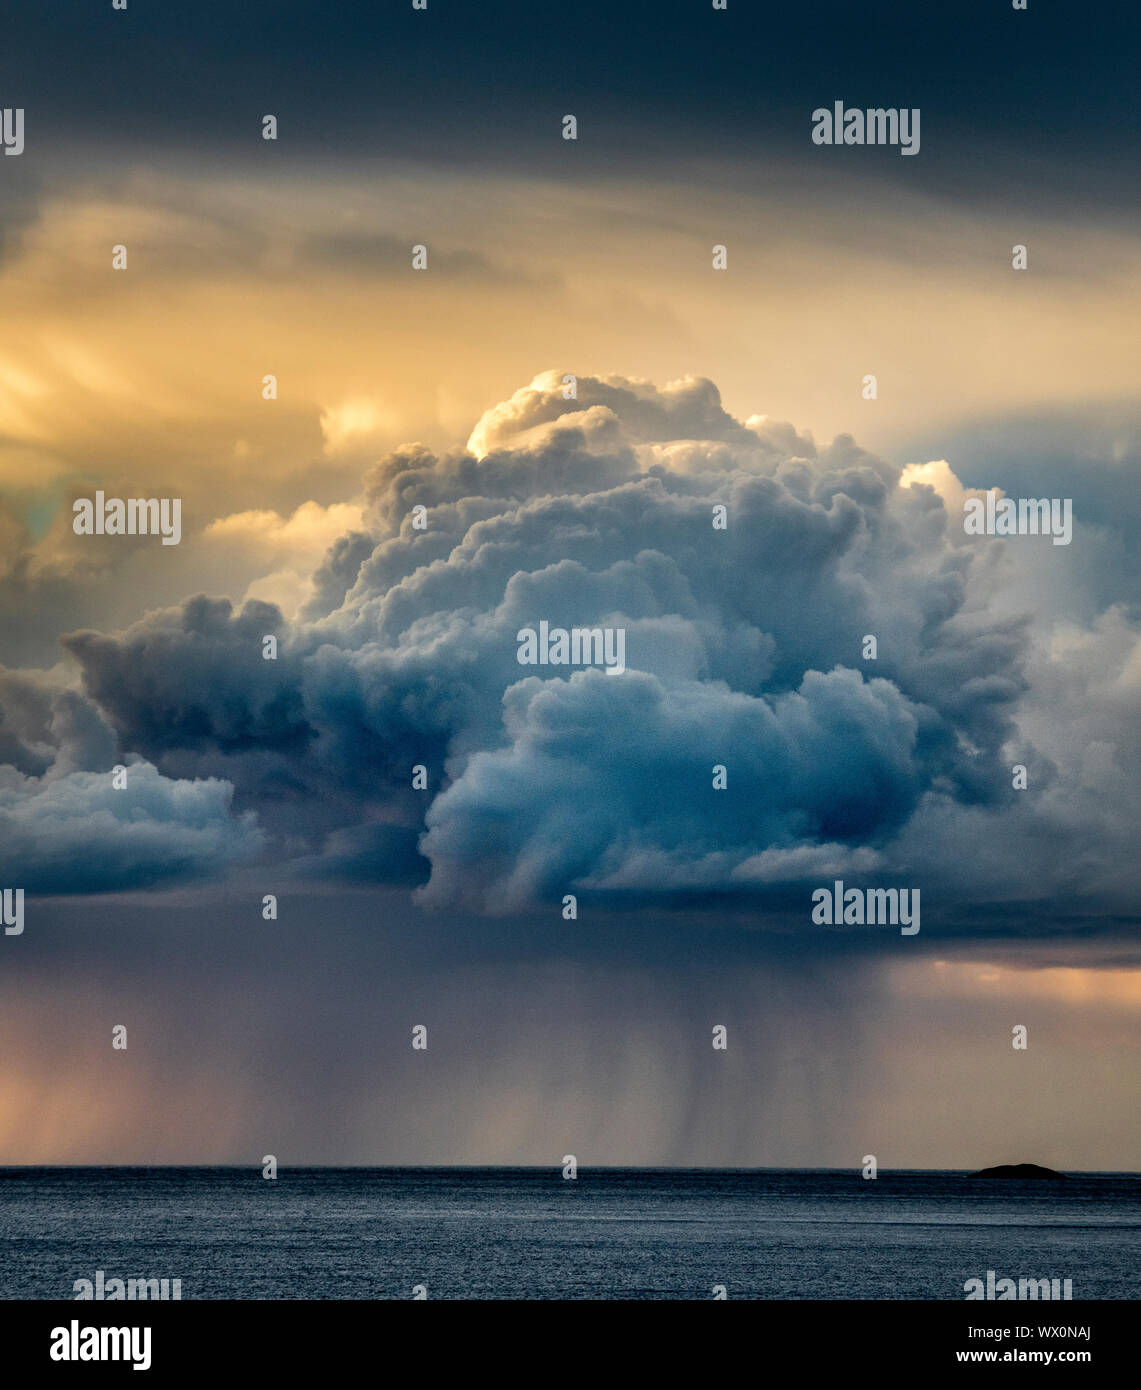 Ciel, nuages, eau, possibilité de pluie, météo et climat. Limousin, France,  Europe Stock Photo - Alamy